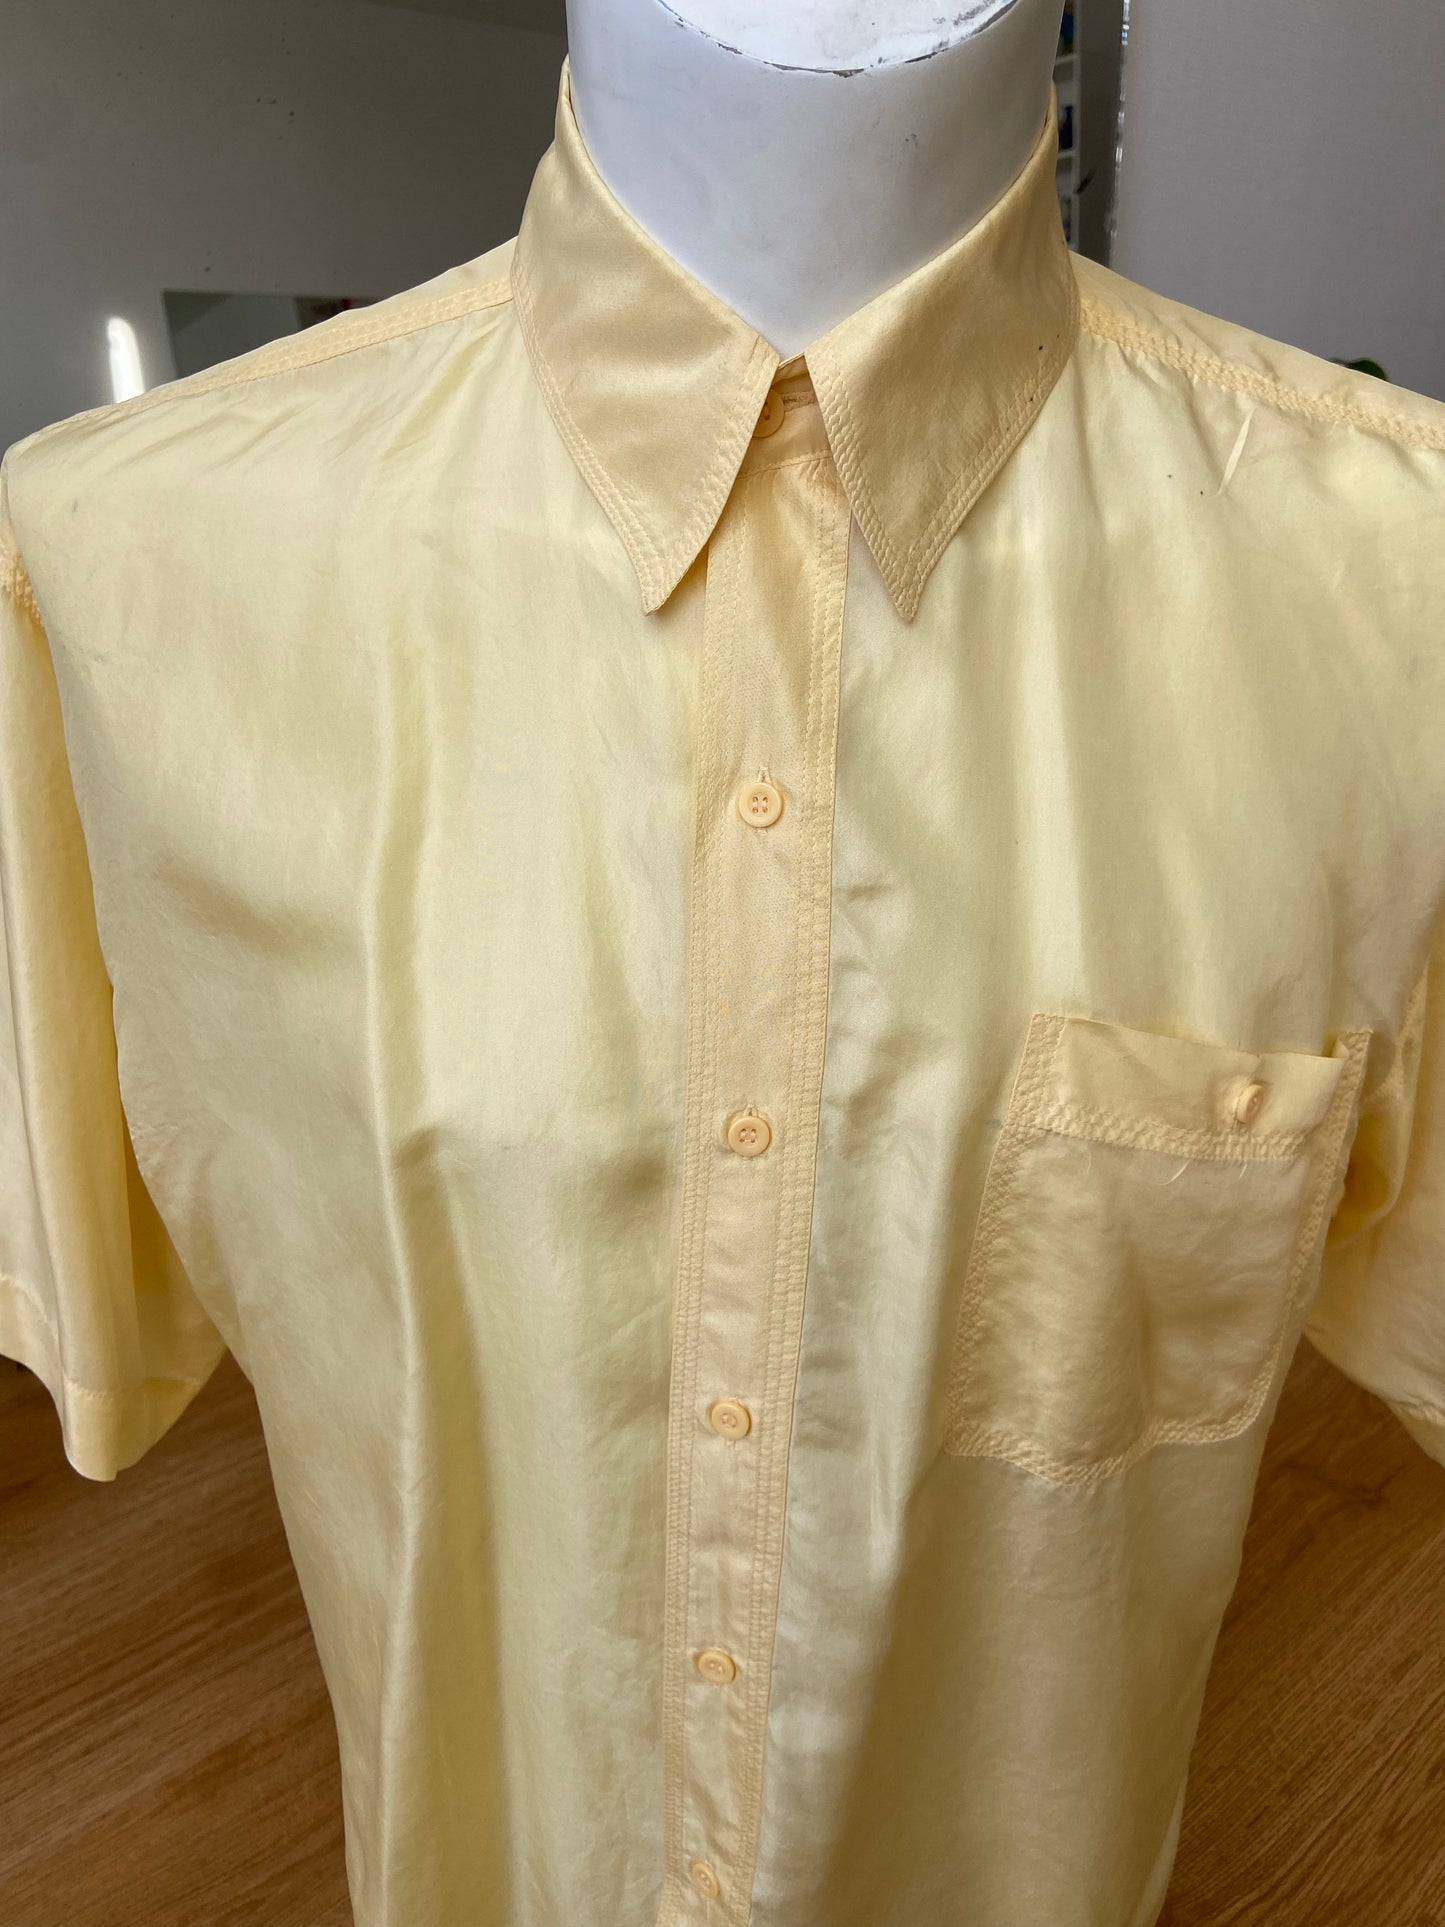 Butter silk shirt